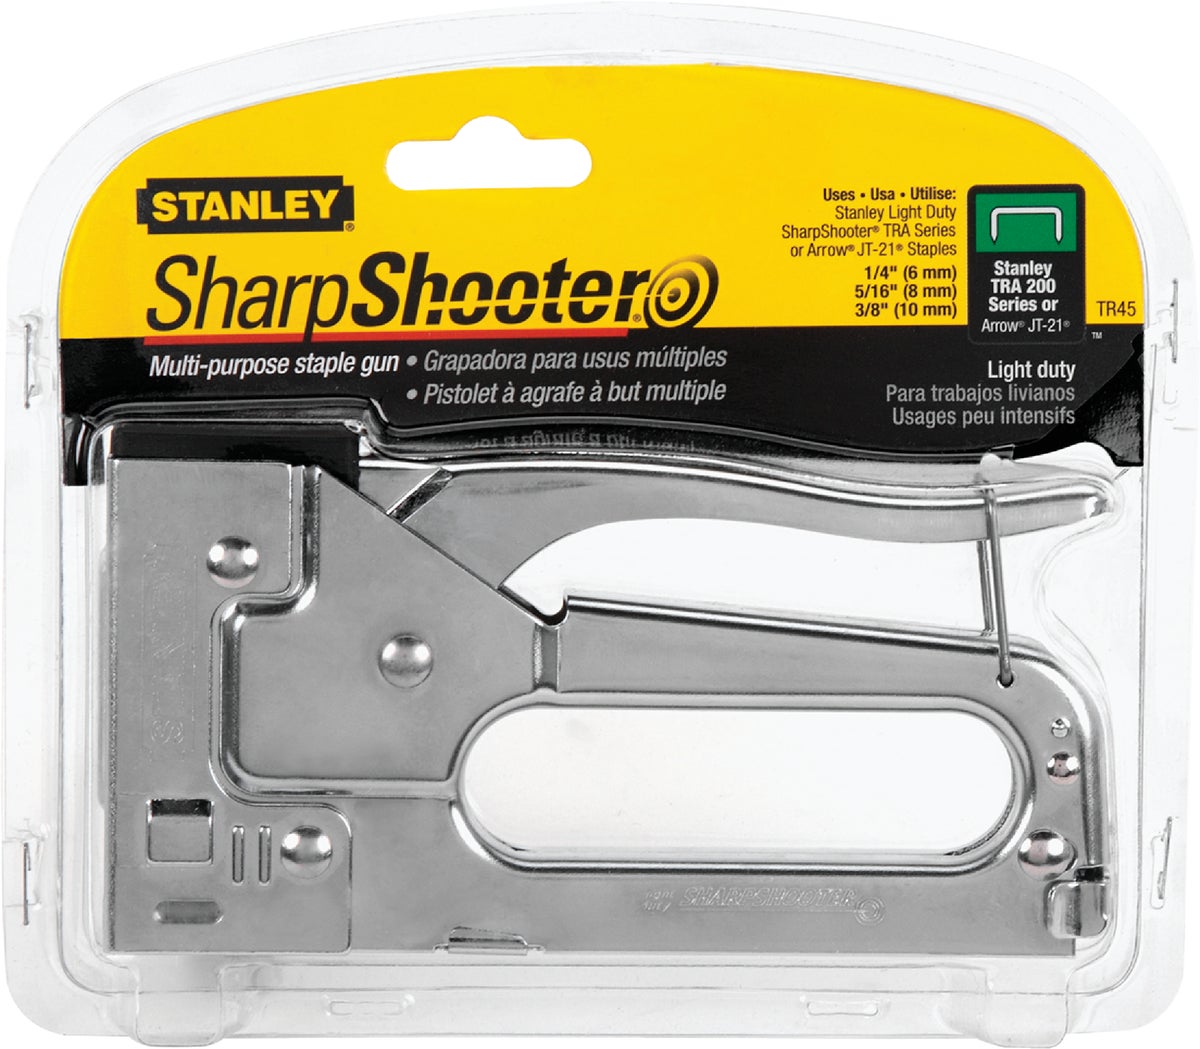 loading a stanley sharpshooter staple gun